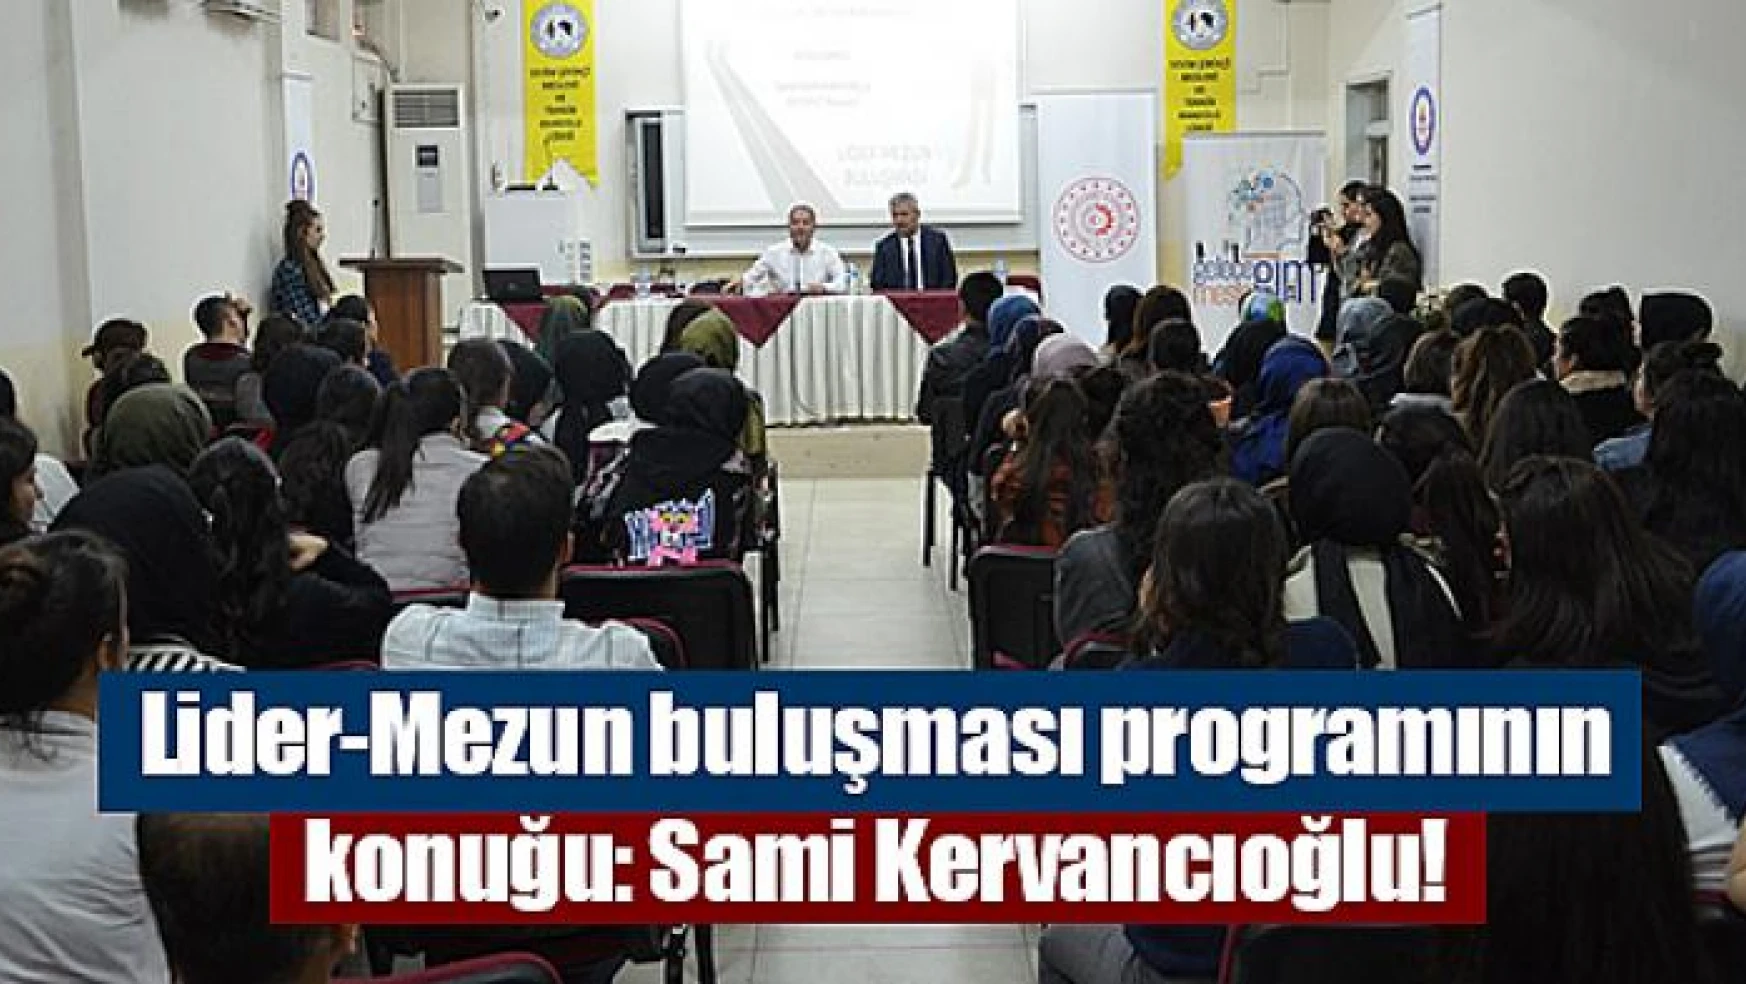 Lider-Mezun buluşması programının konuğu: Sami Kervancıoğlu!